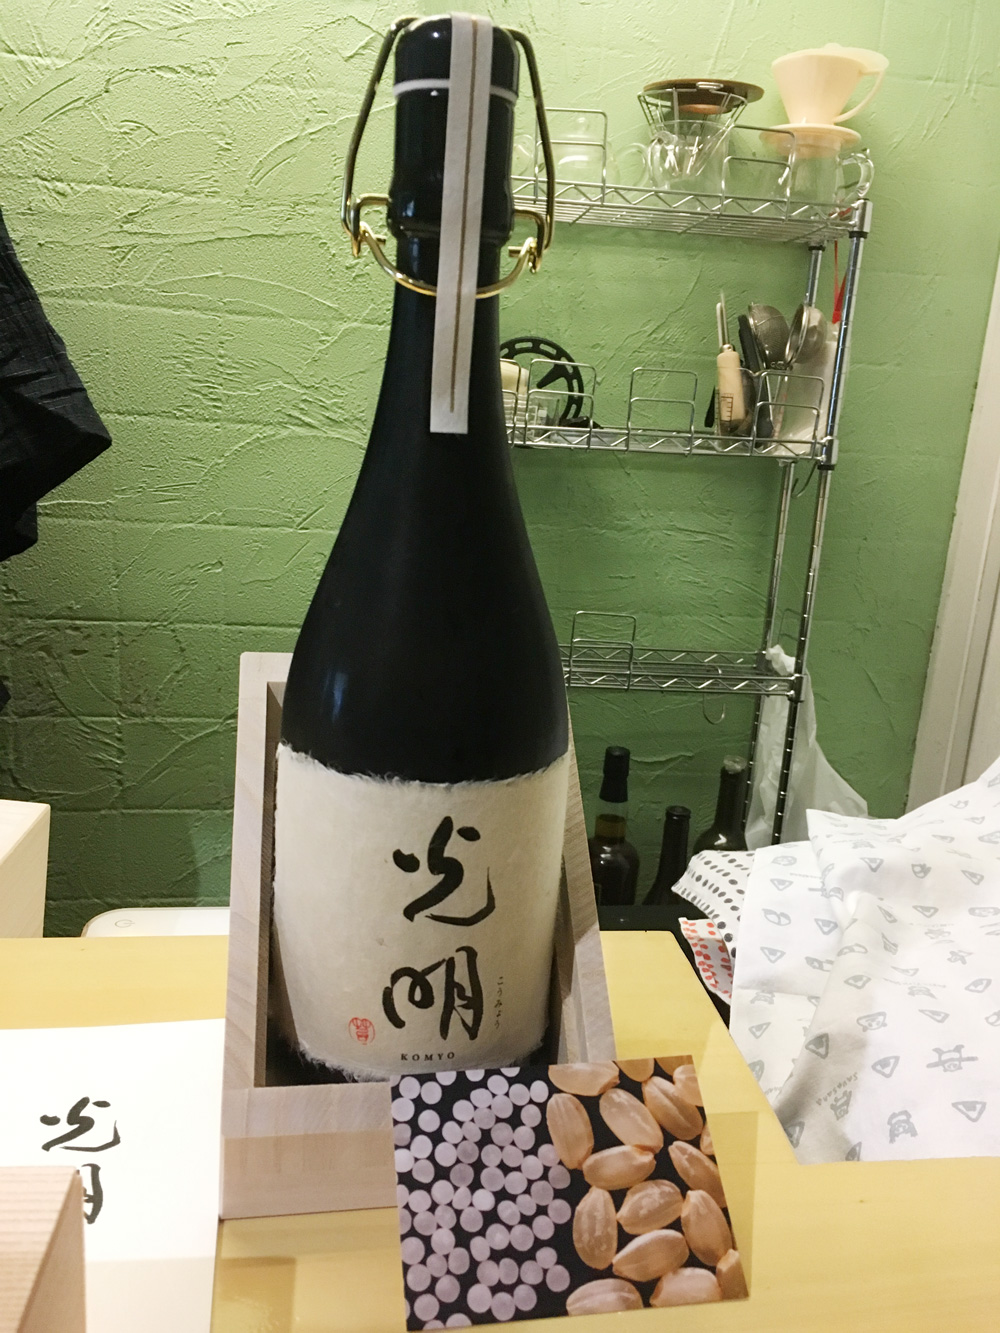 精米歩合が1％の奇跡の日本酒「楯野川・光明」！10万円する日本酒ってどんな味？ということで、阿佐ヶ谷の「あかね雲」でみんなで飲み比べ！